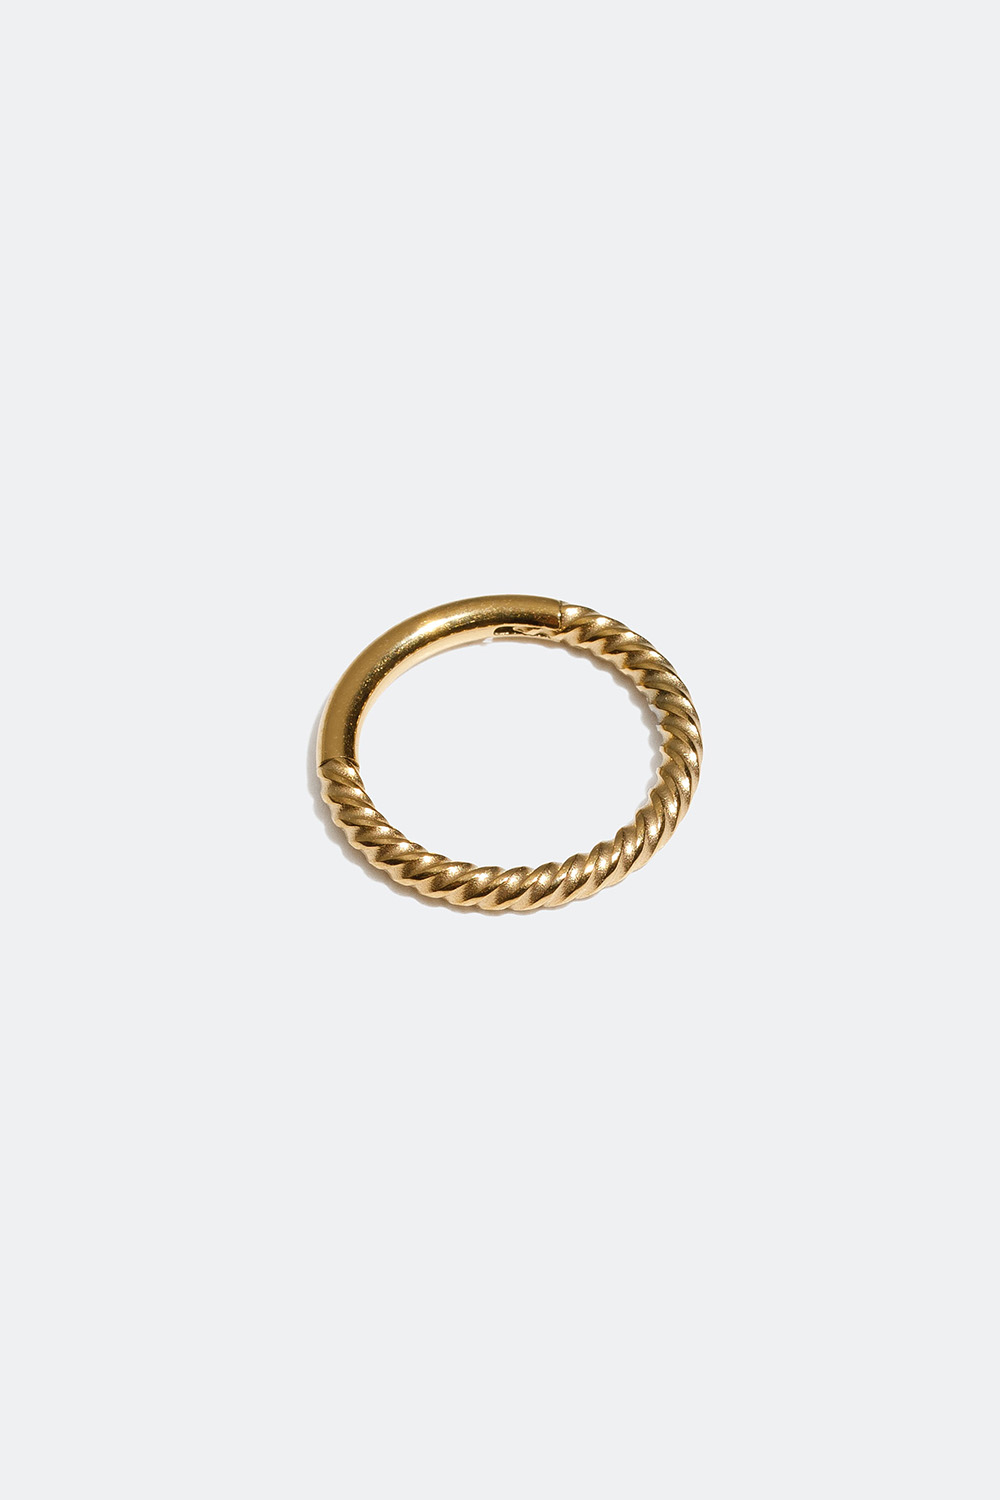 Guldfärgad piercingring, 8 mm, clicker i gruppen Smycken / Piercings hos Glitter (255000522000)